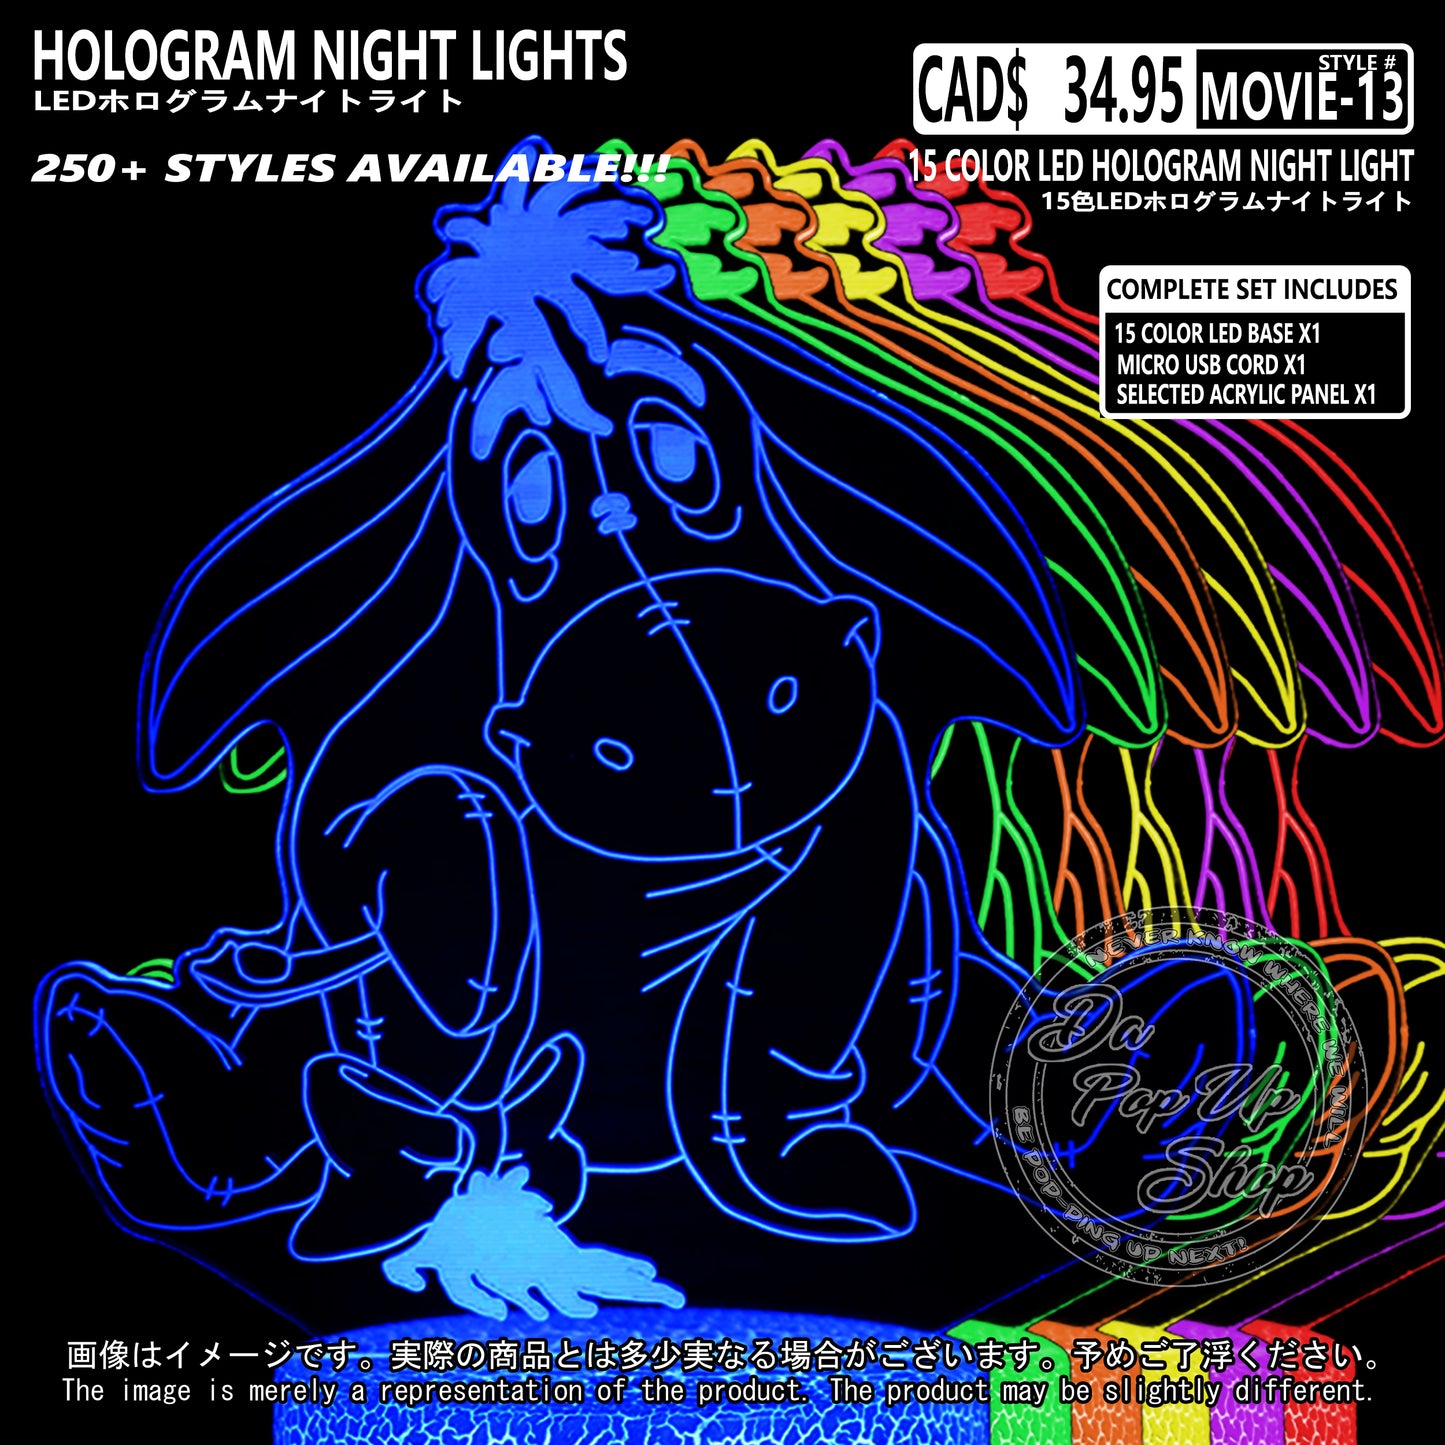 (MOVIE-13) Winnie the Pooh Hologram LED Night Light